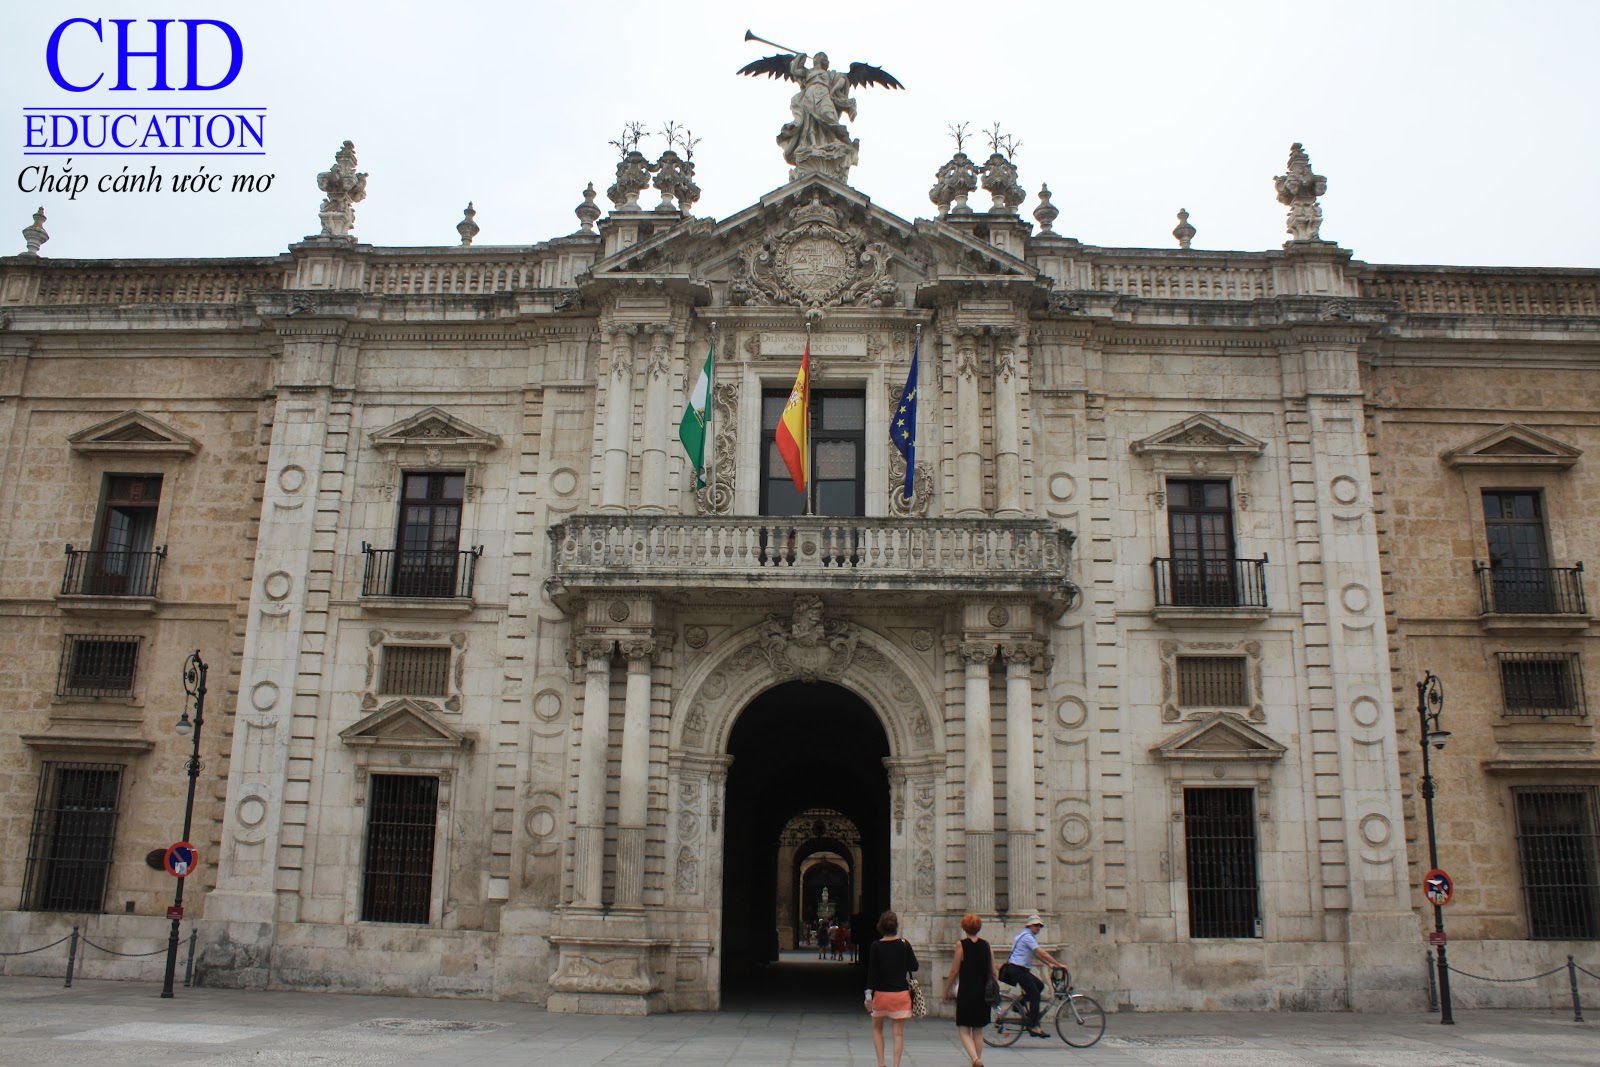 Uiversity of Seville